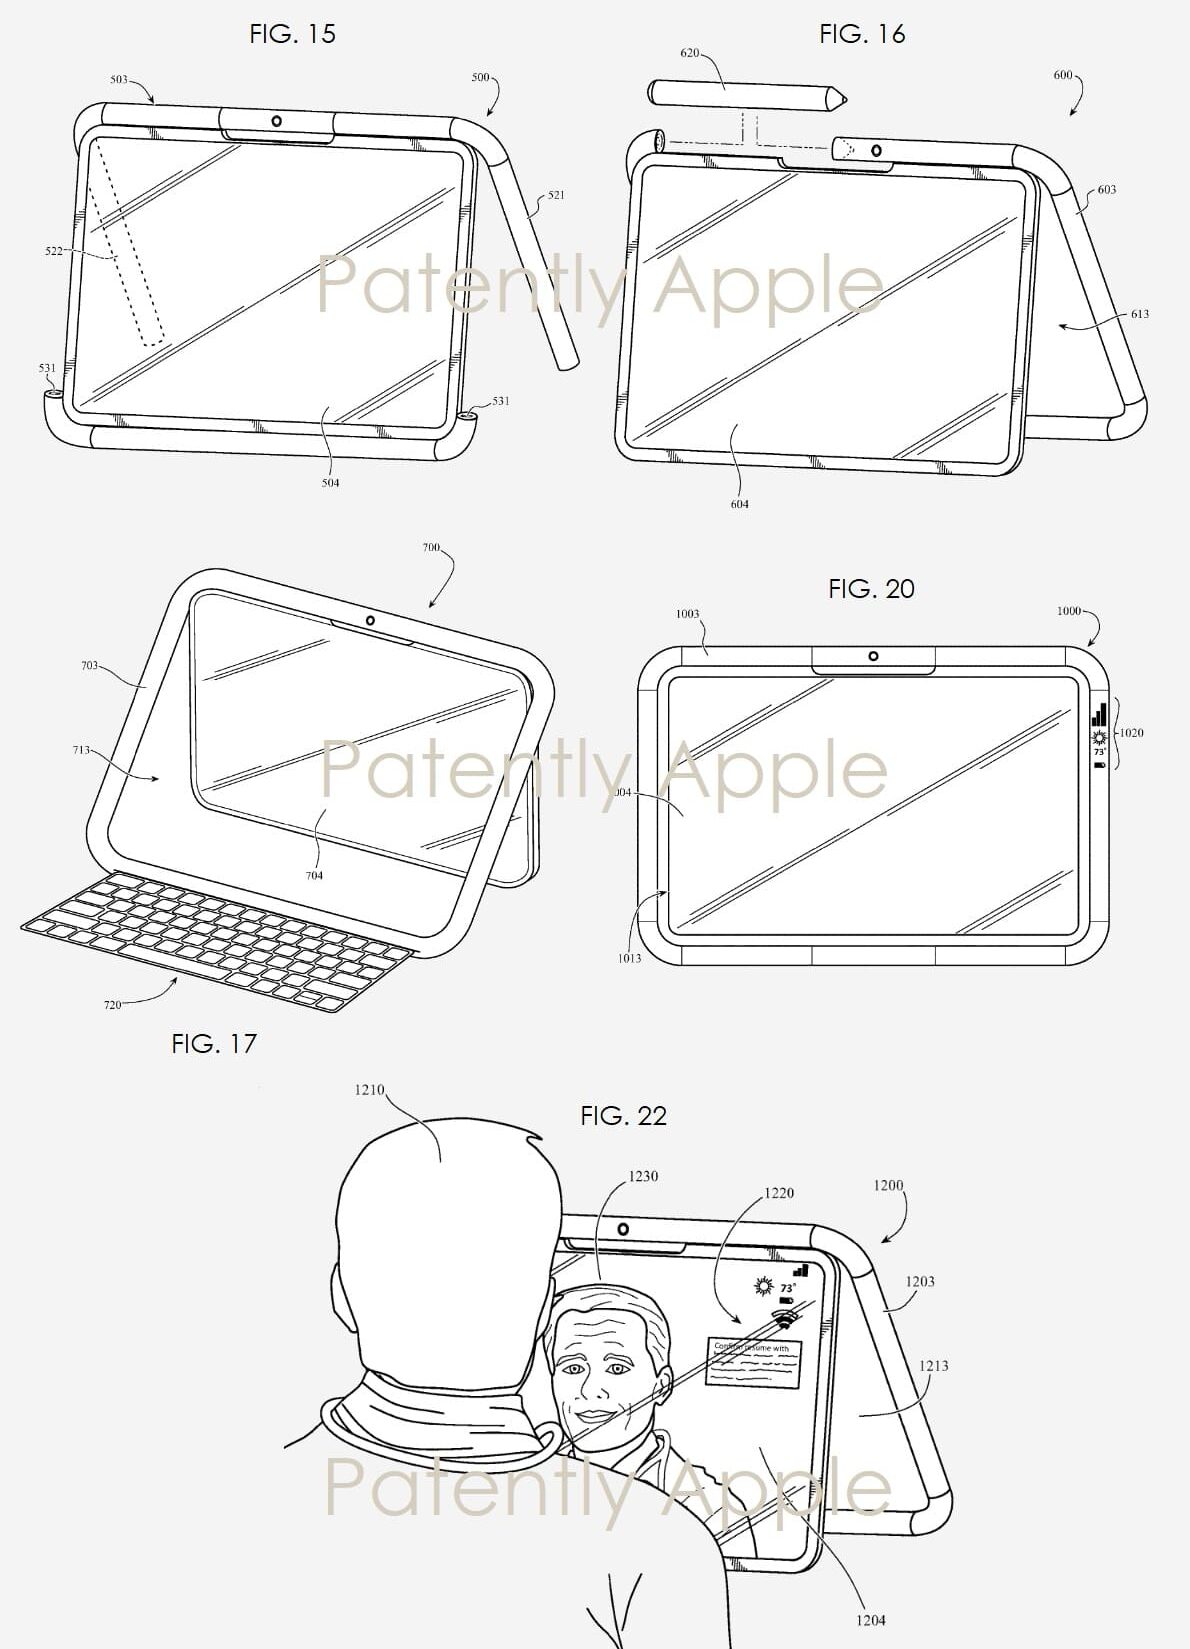 iPad design patent